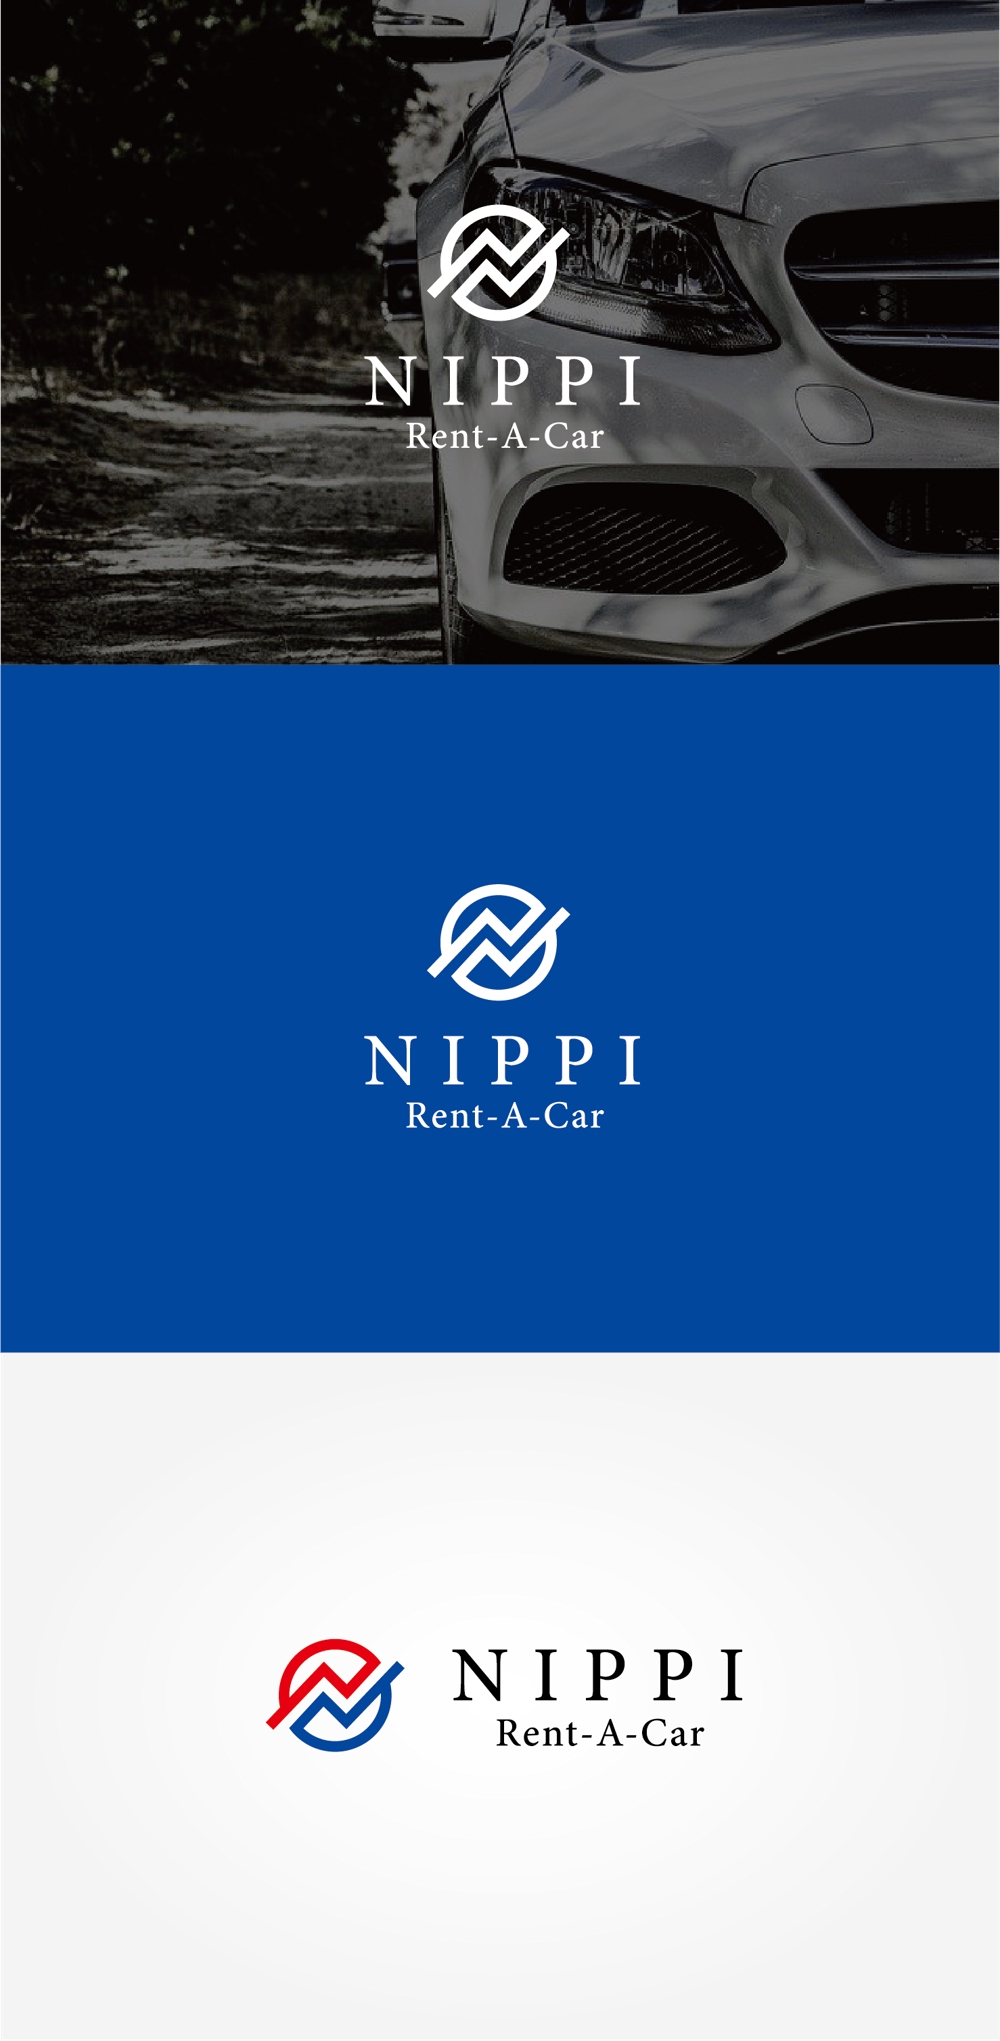 フィリピンの運転手付レンタカーサービス「NIPPI」のロゴ